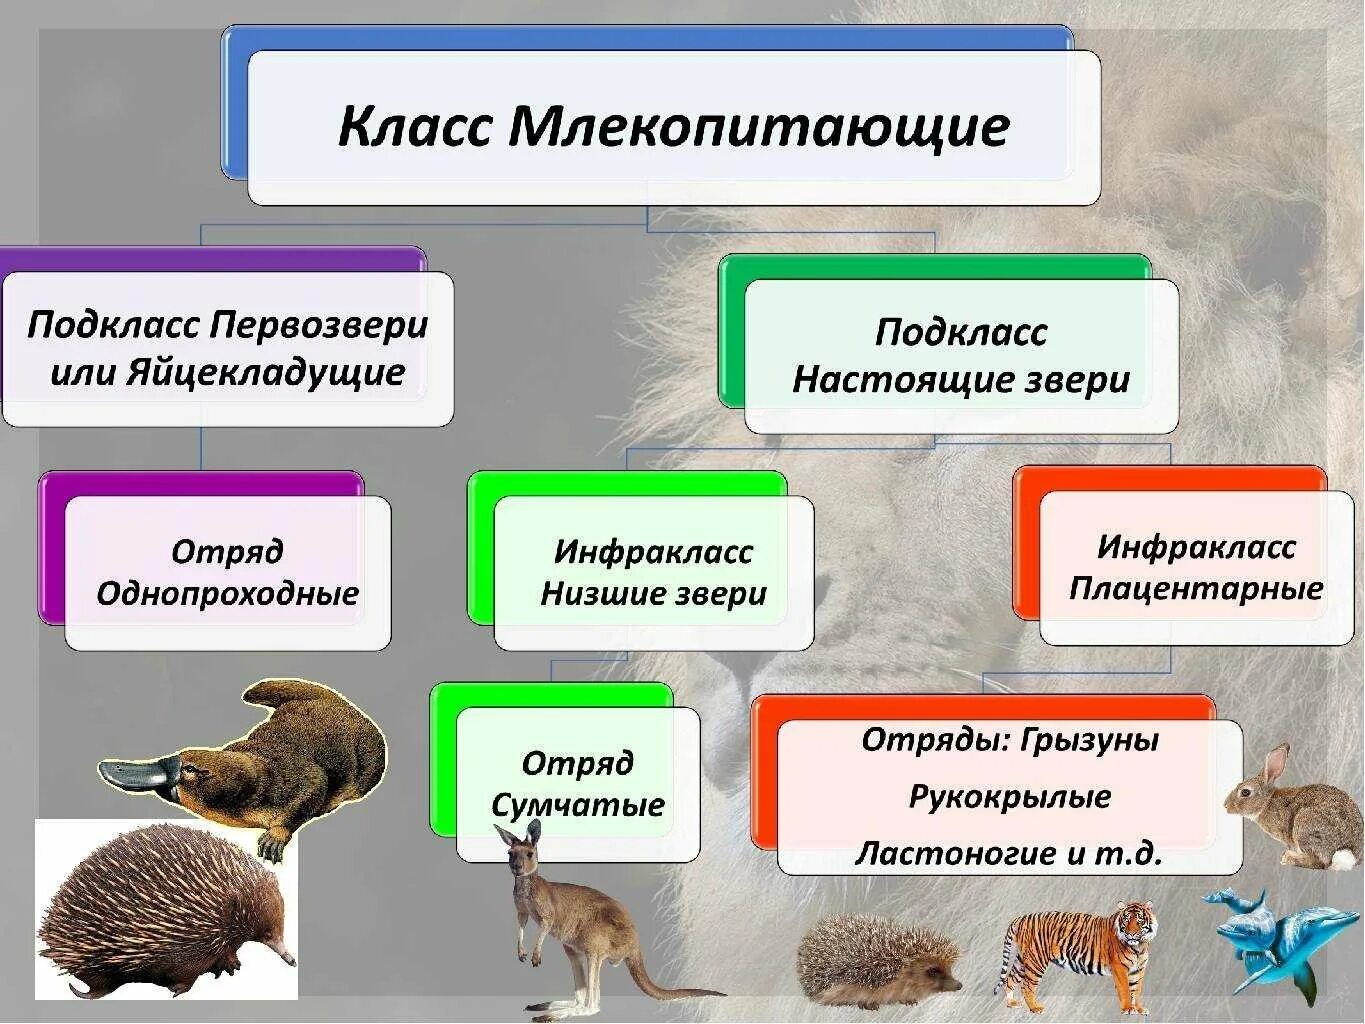 Высшие плацентарные звери. Систематика отряды млекопитающих 7 класс. Отряды млекопитающих схема. Отряды млекопитающих 7 класс биология. Многообразие отрядов млекопитающих.